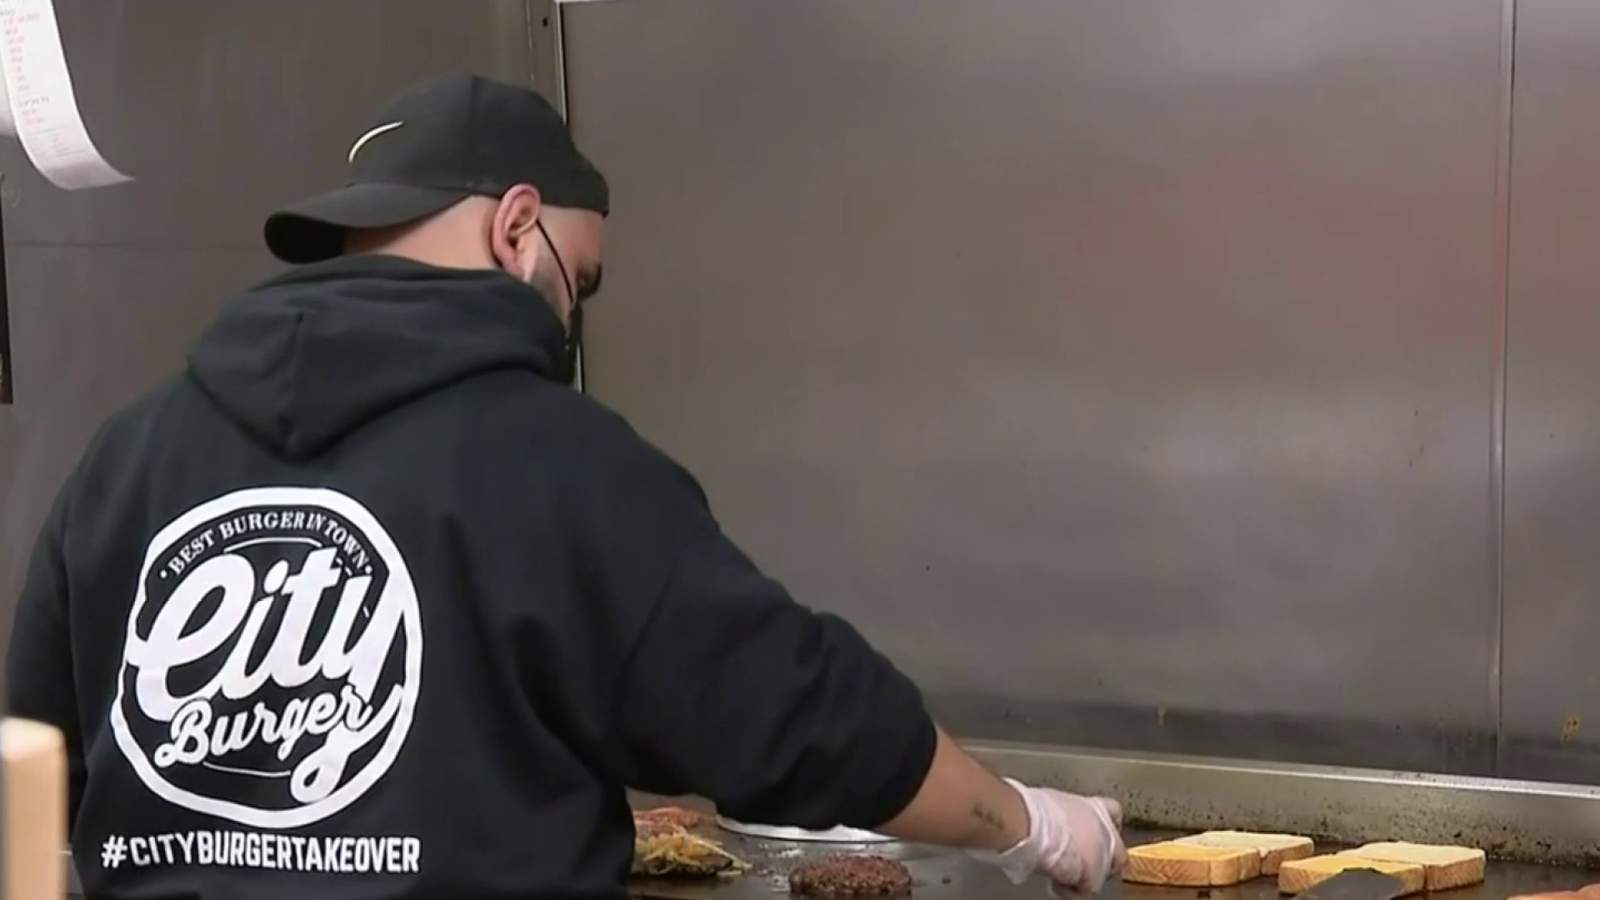 Warren restaurant gets unexpected sales boost, donates to frontline workers